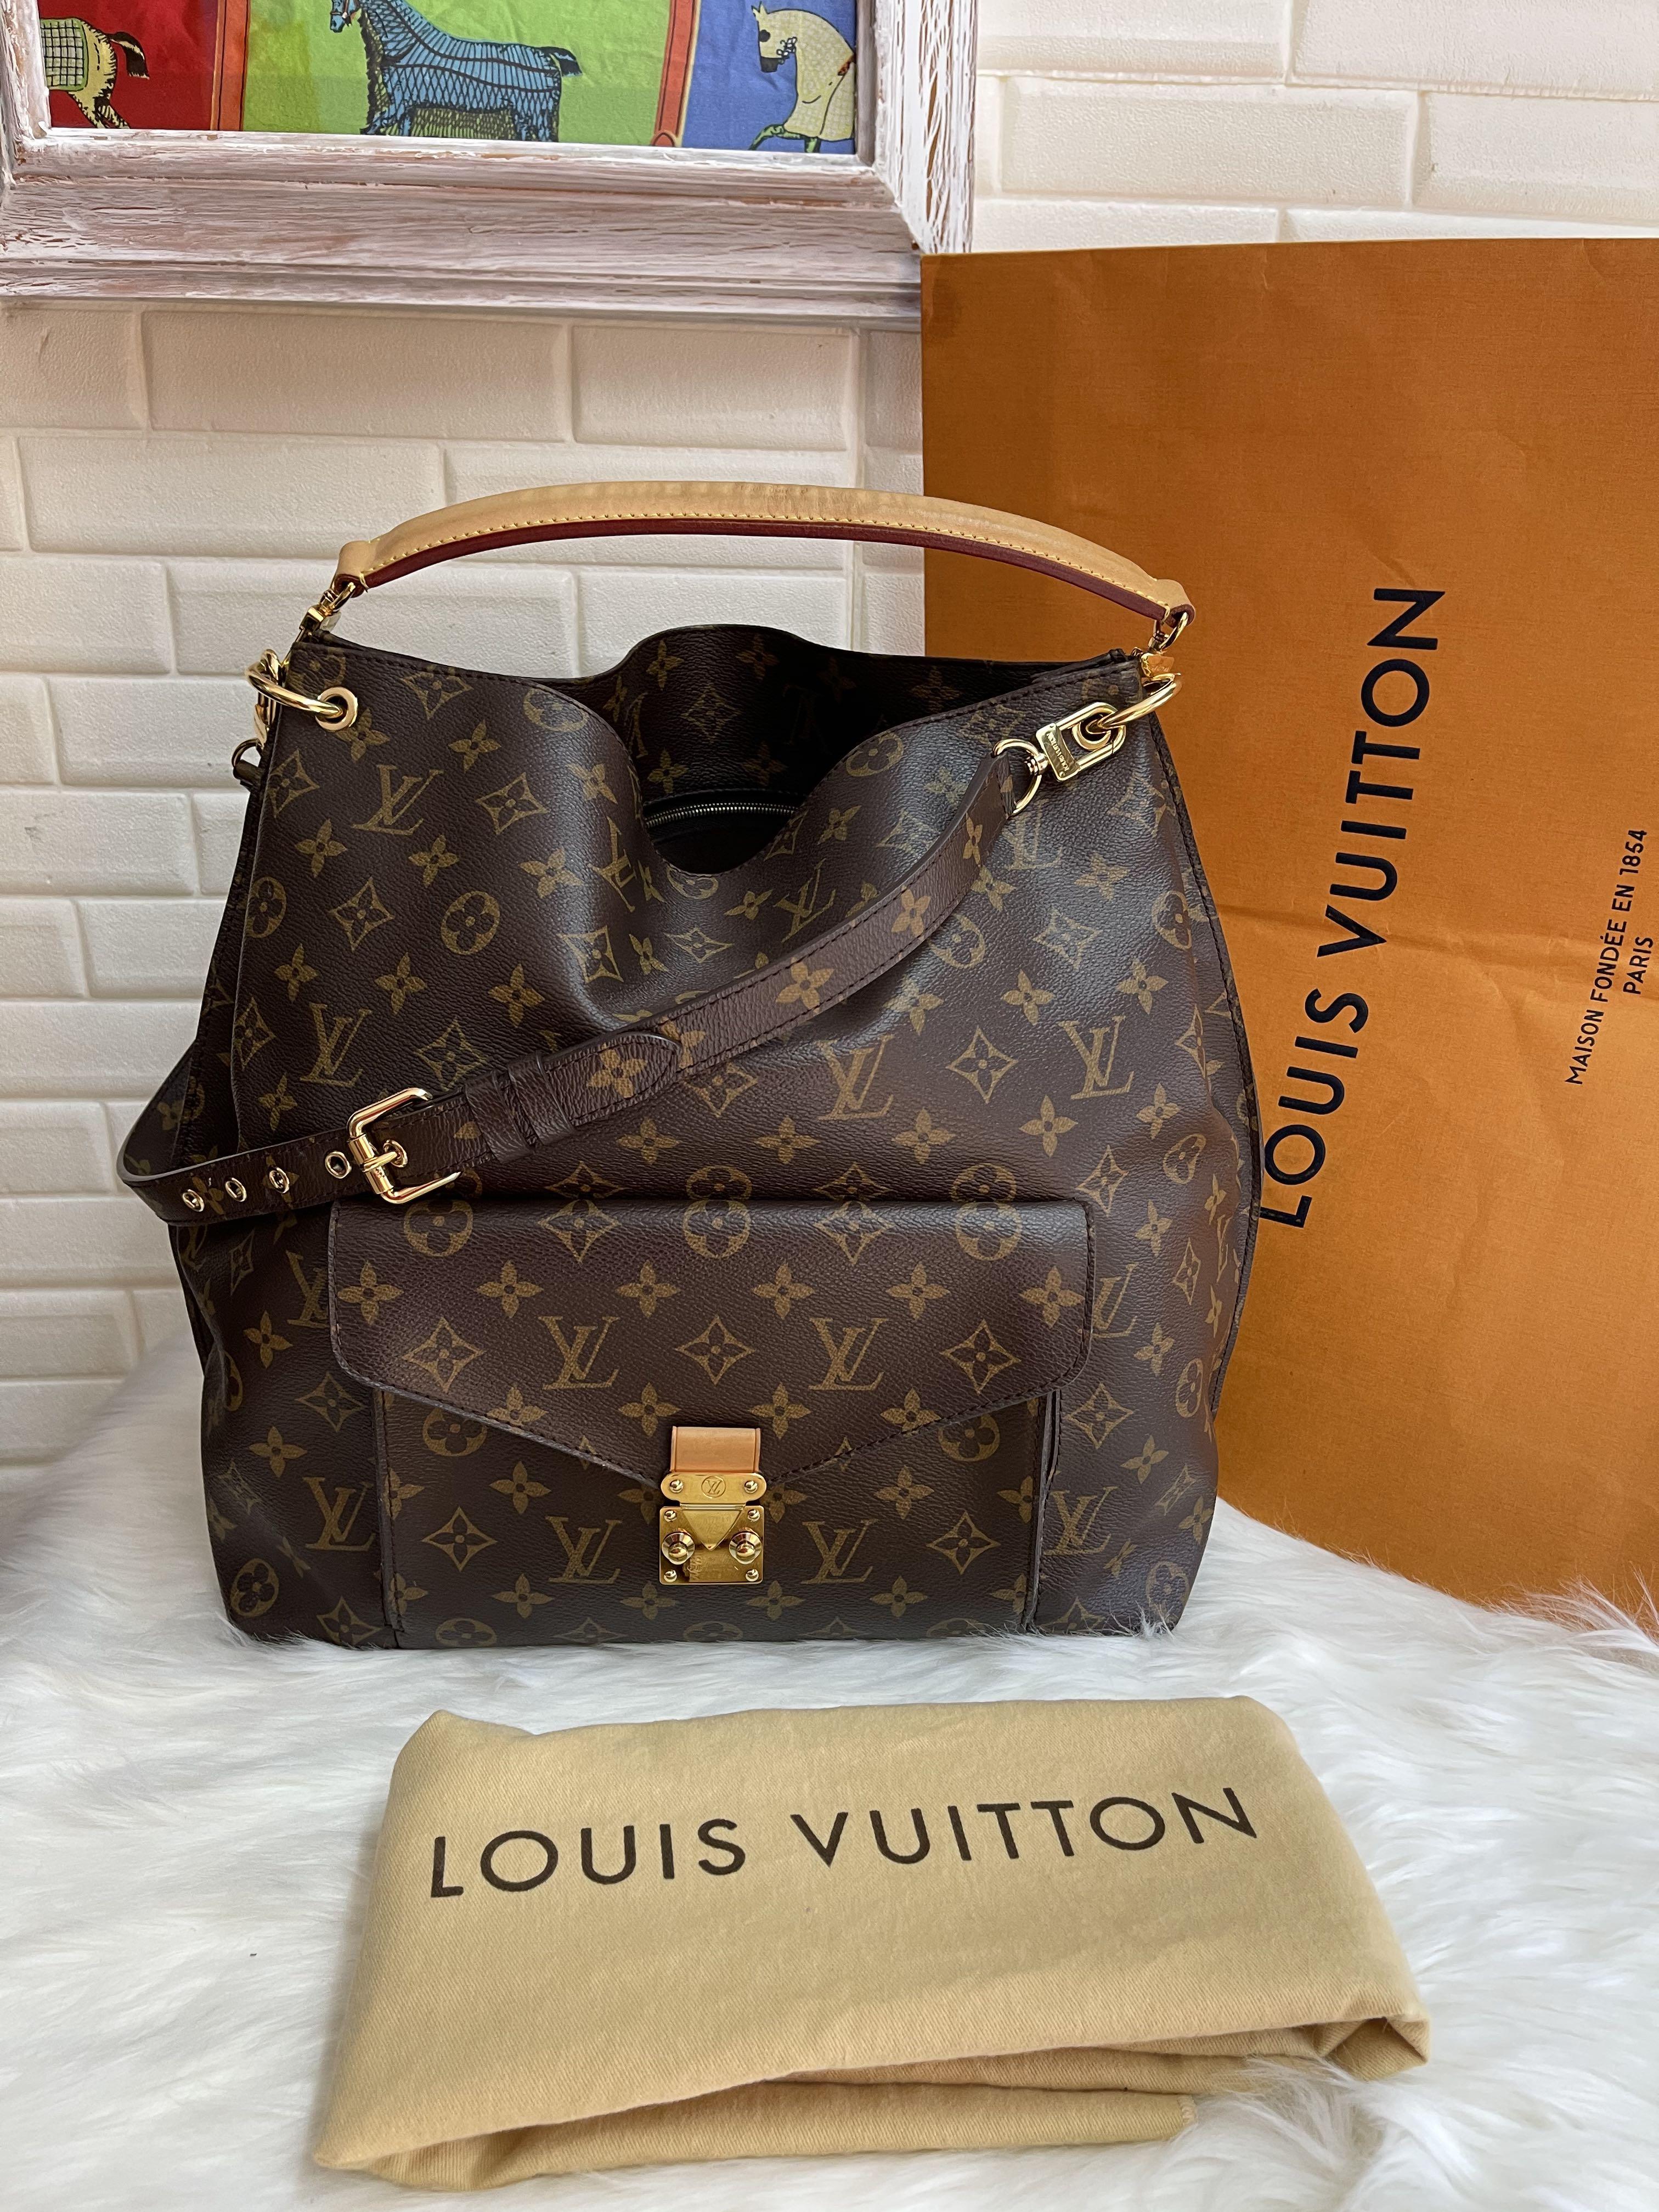 Sold at Auction: Louis Vuitton, Louis Vuitton Monogram Canvas Metis Hobo Bag